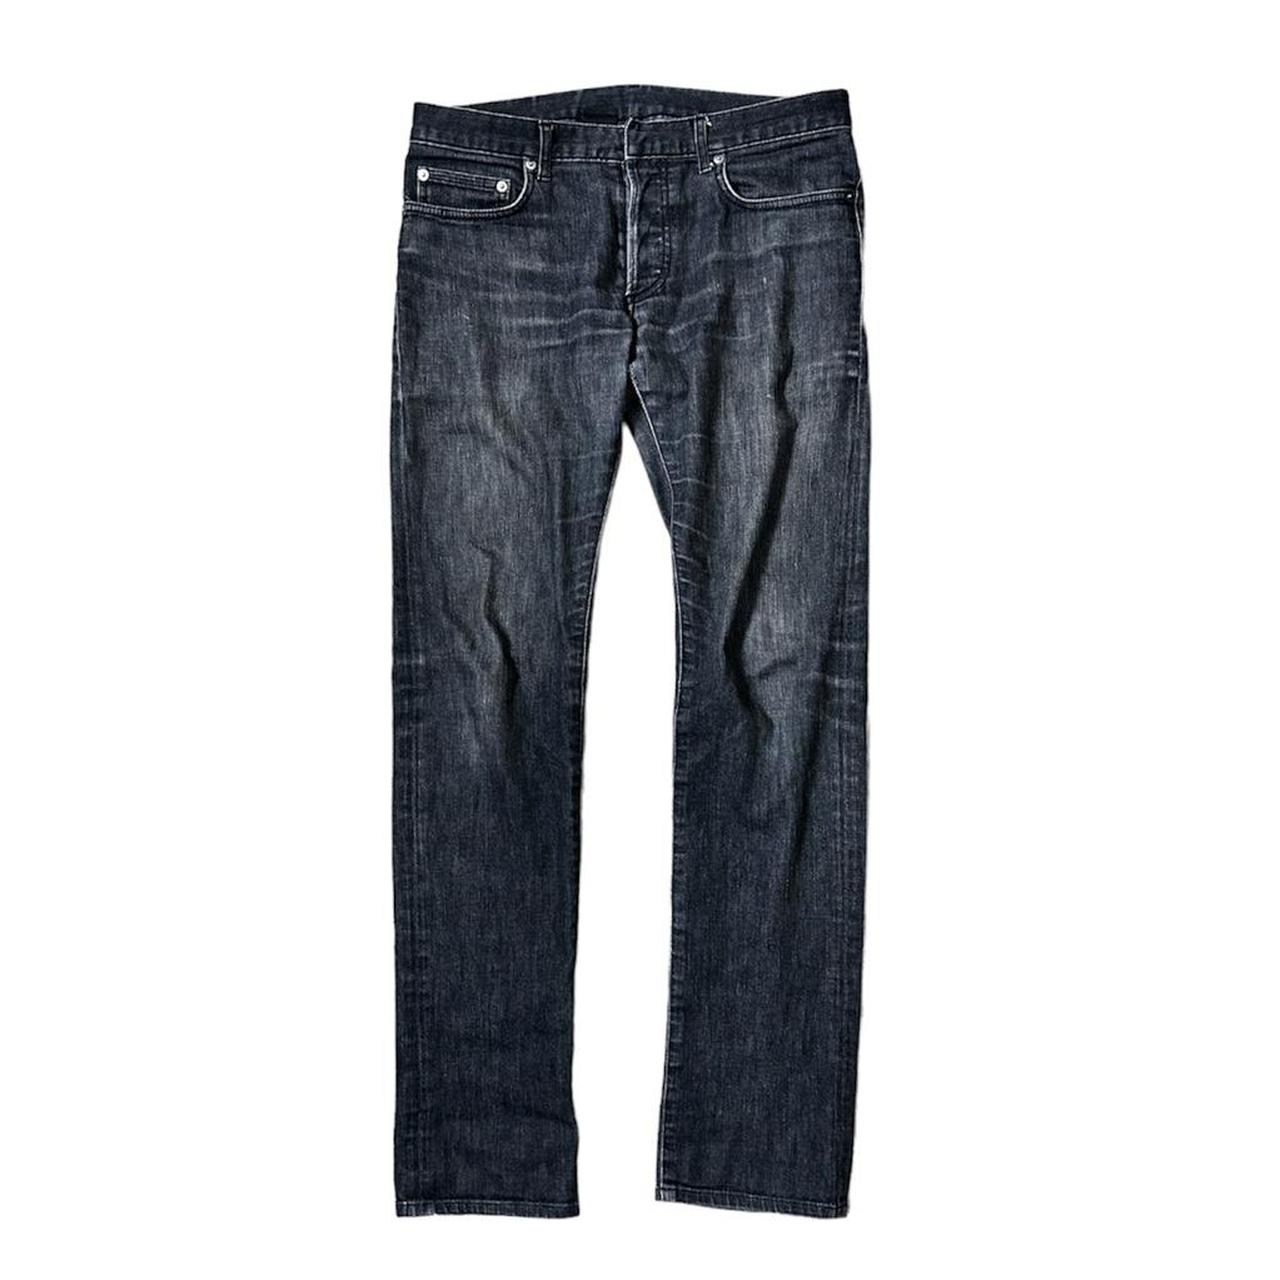 Dior Hedi Slimane Grey Wash Jeans Size: 30 Runs... - Depop